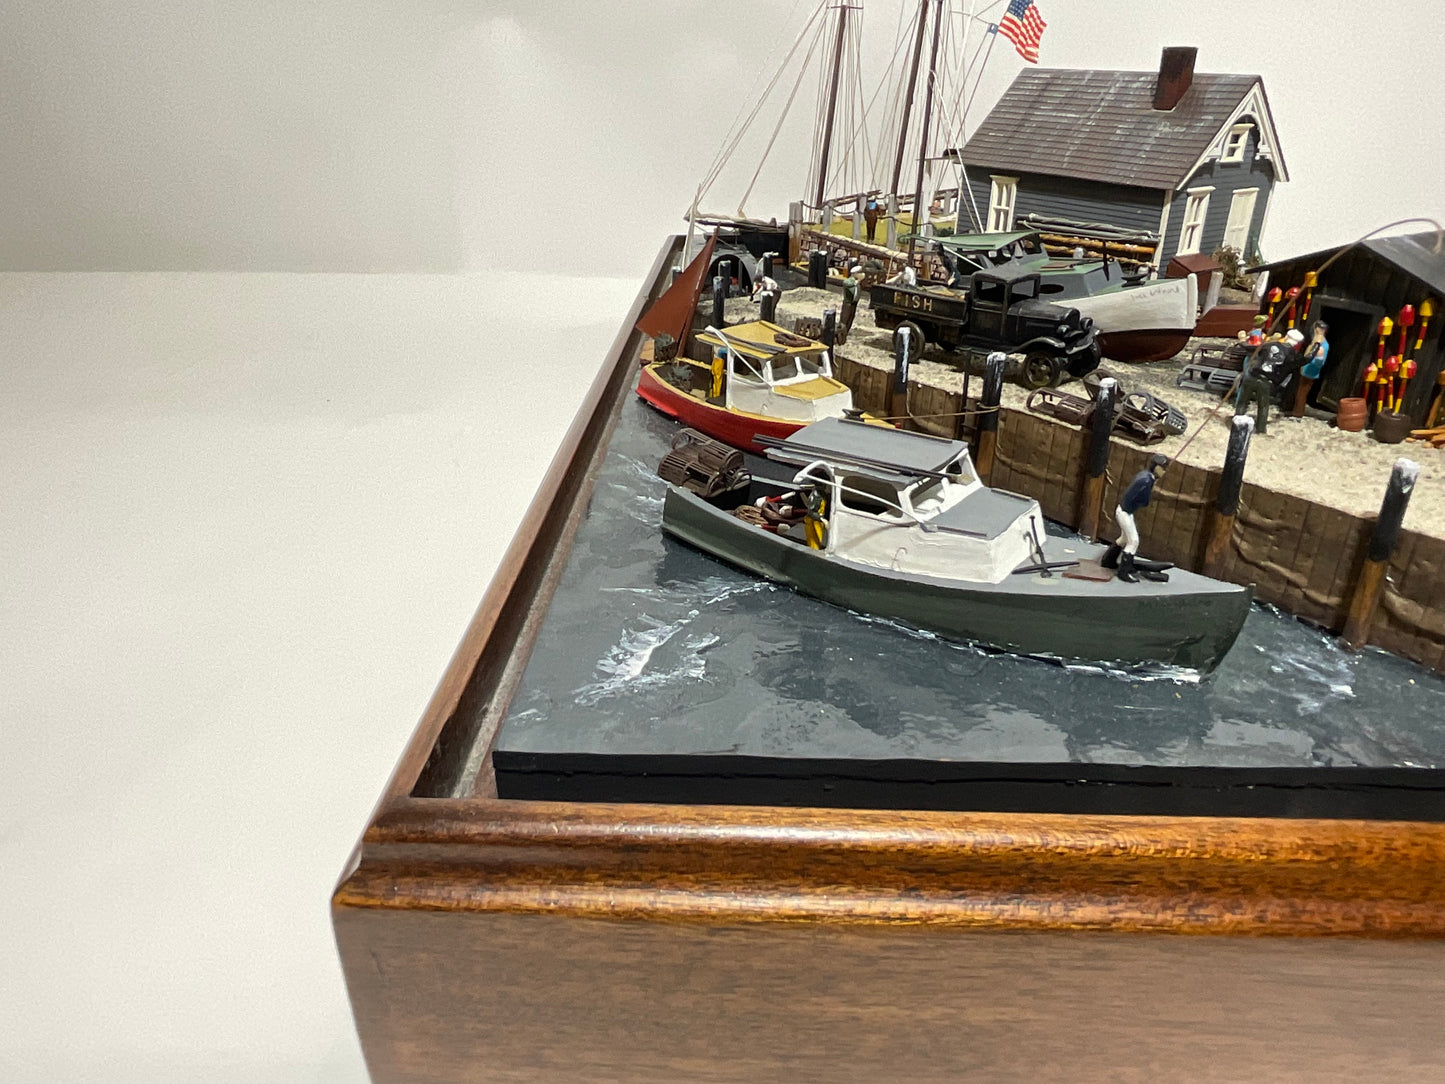 Nautical diorama of CARLYLE COVE in Maine